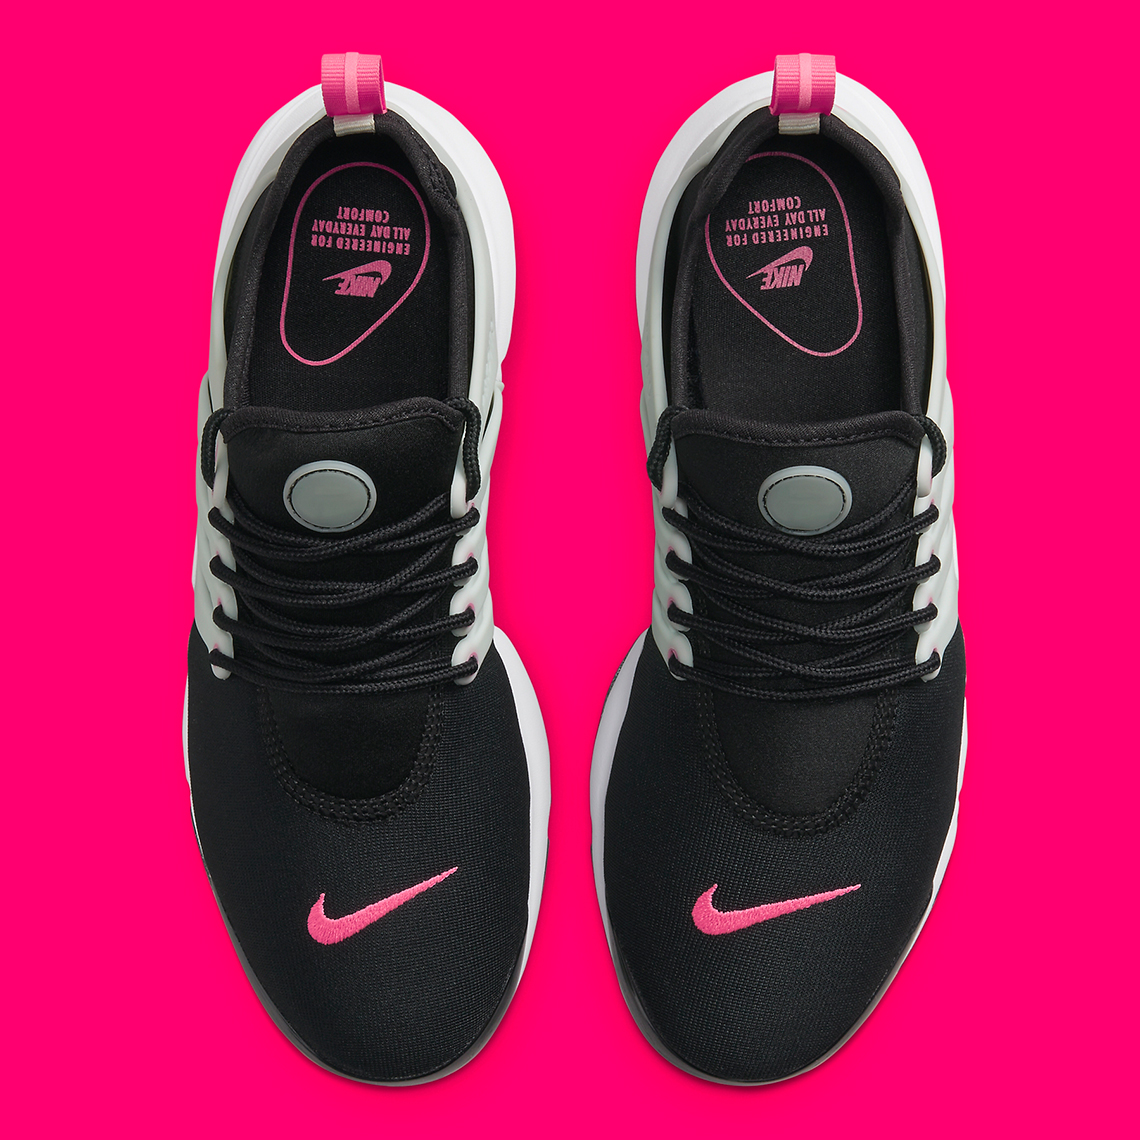 Nike Air Presto Black Pink 878068 019 8